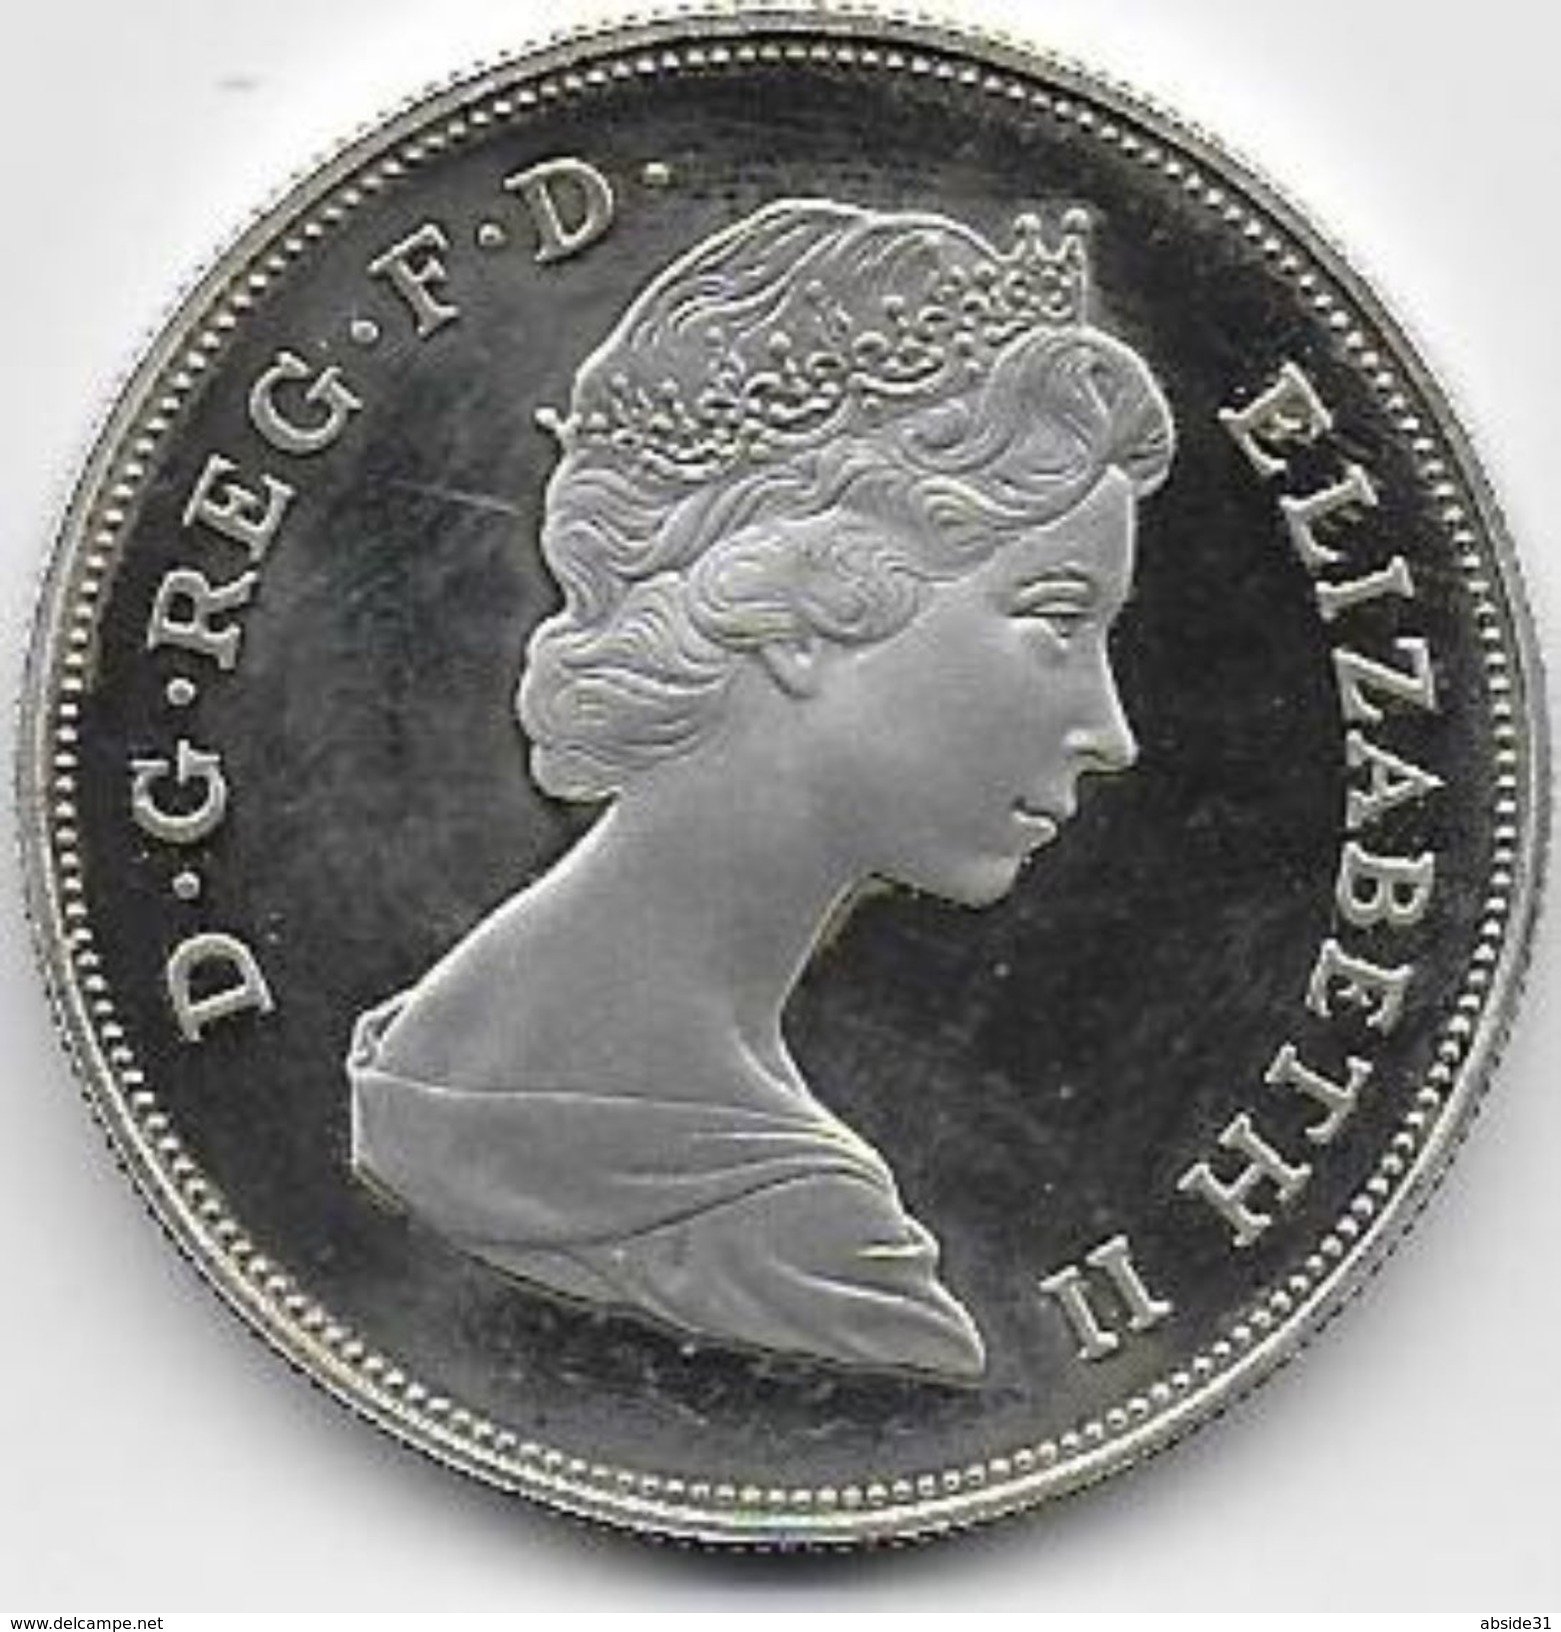 Queen Elizabeth The Queen Mother   1980 ( Proof Silver ) - Maundy Sets & Gedenkmünzen